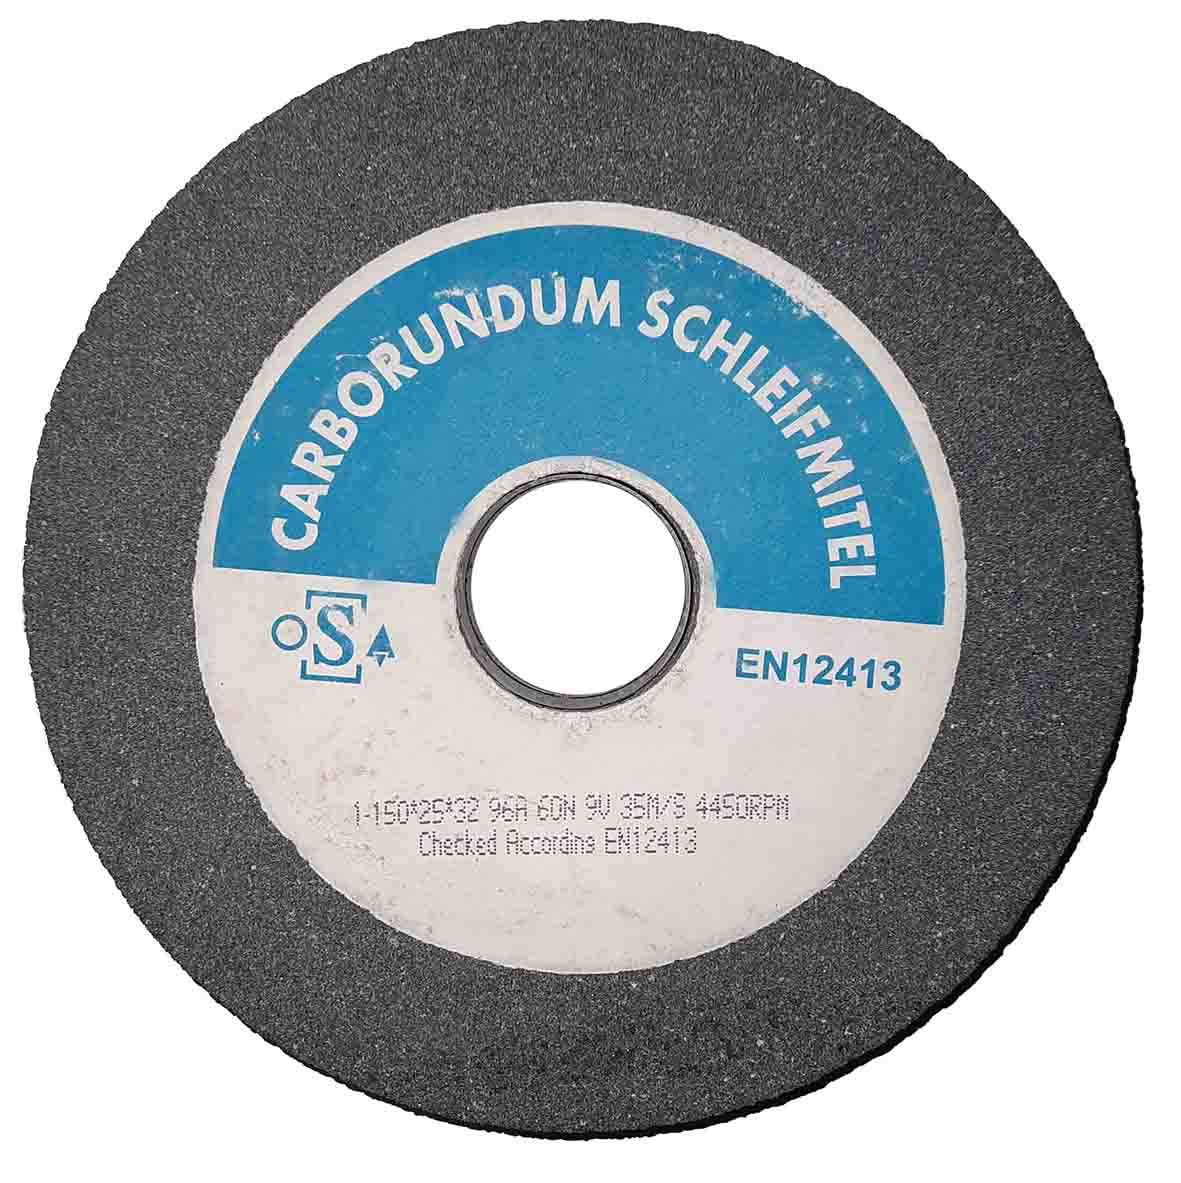 صفحه سنگ سایش آهن رومیزی Carborundum   کاربُراندوم 150mm